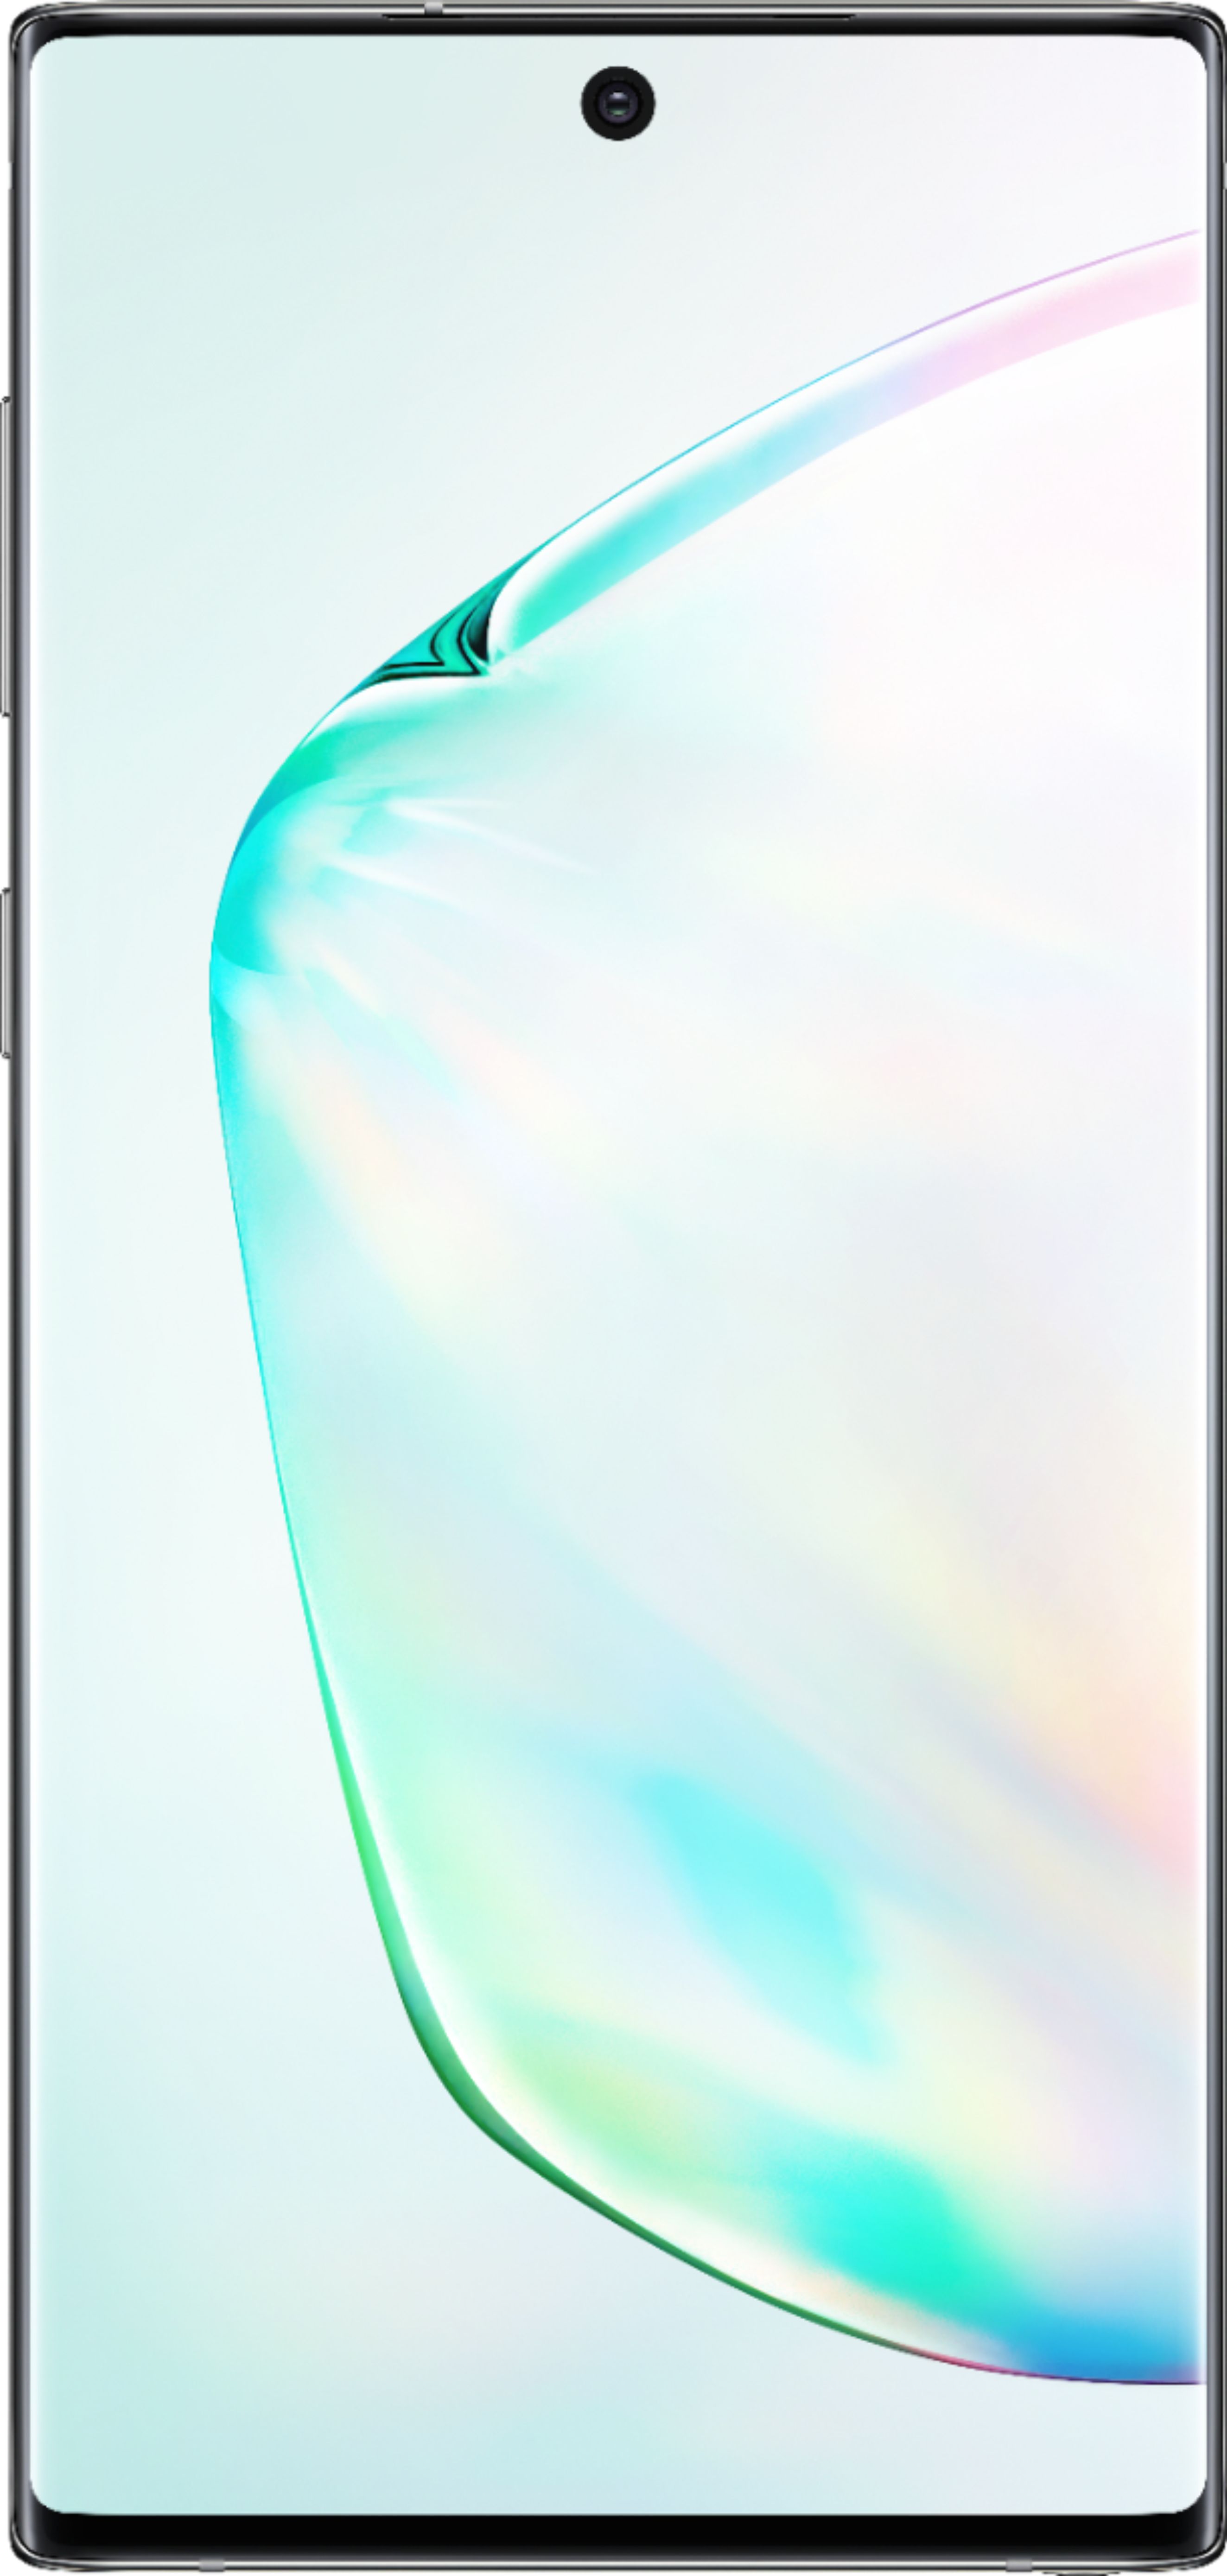 Samsung Galaxy Note 10 (Aura Red, 8GB RAM, 256GB Storage) 